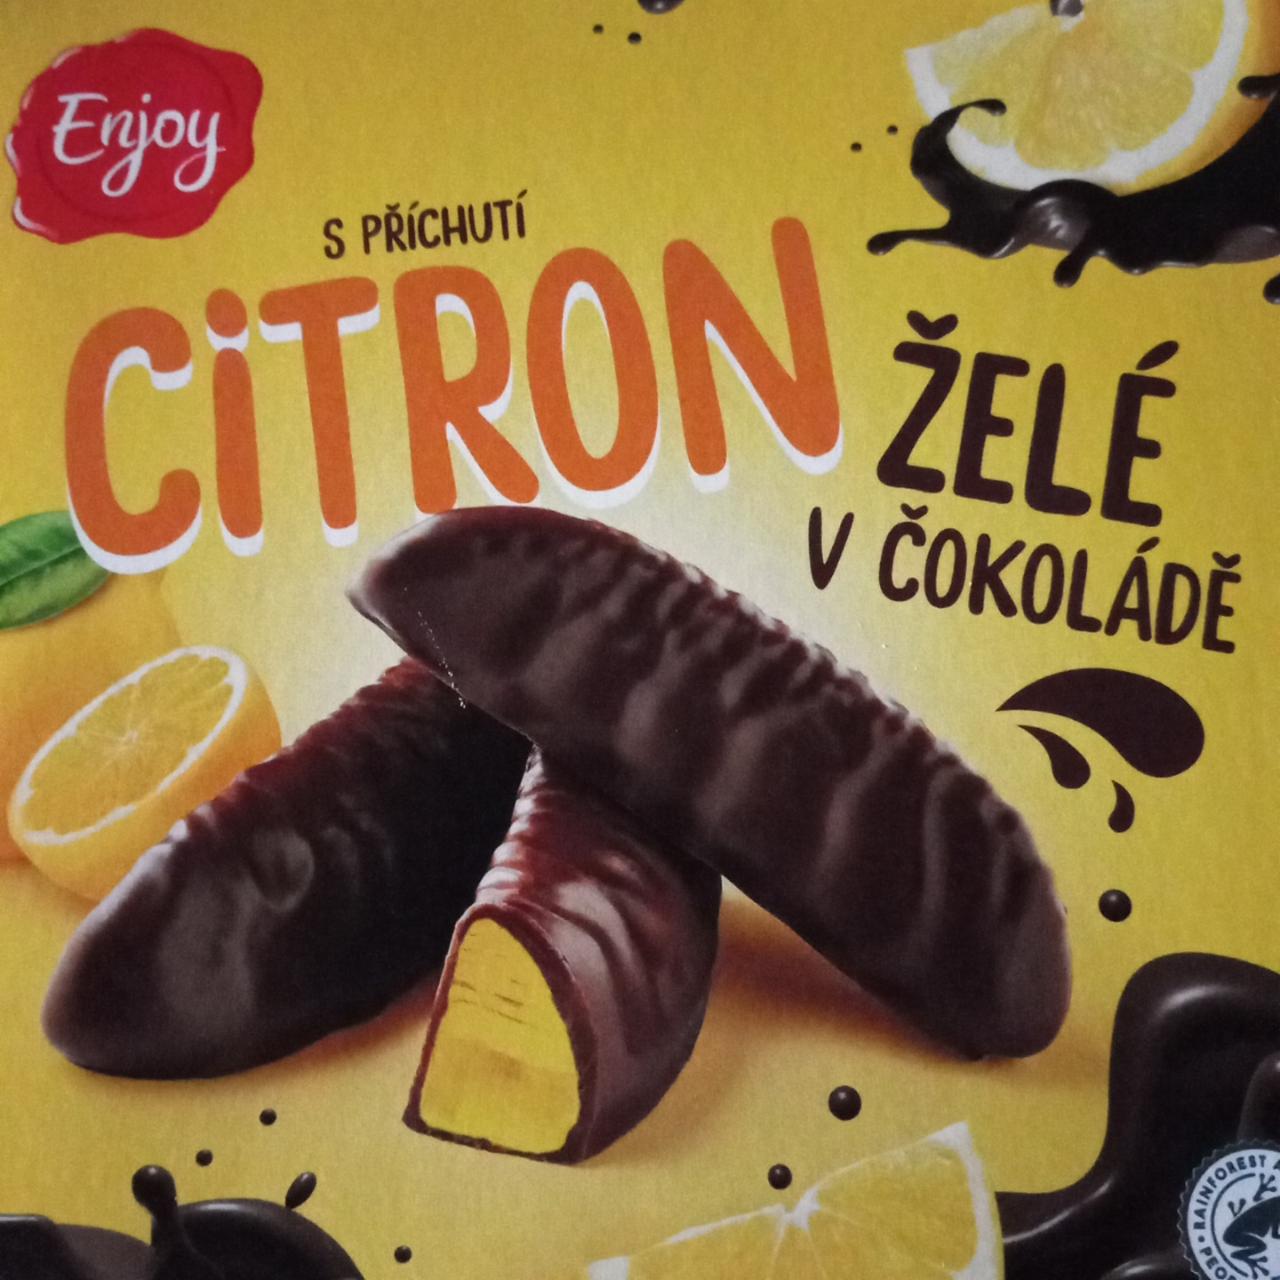 Фото - Цукерки Citron желе в шоколаді Enjoy